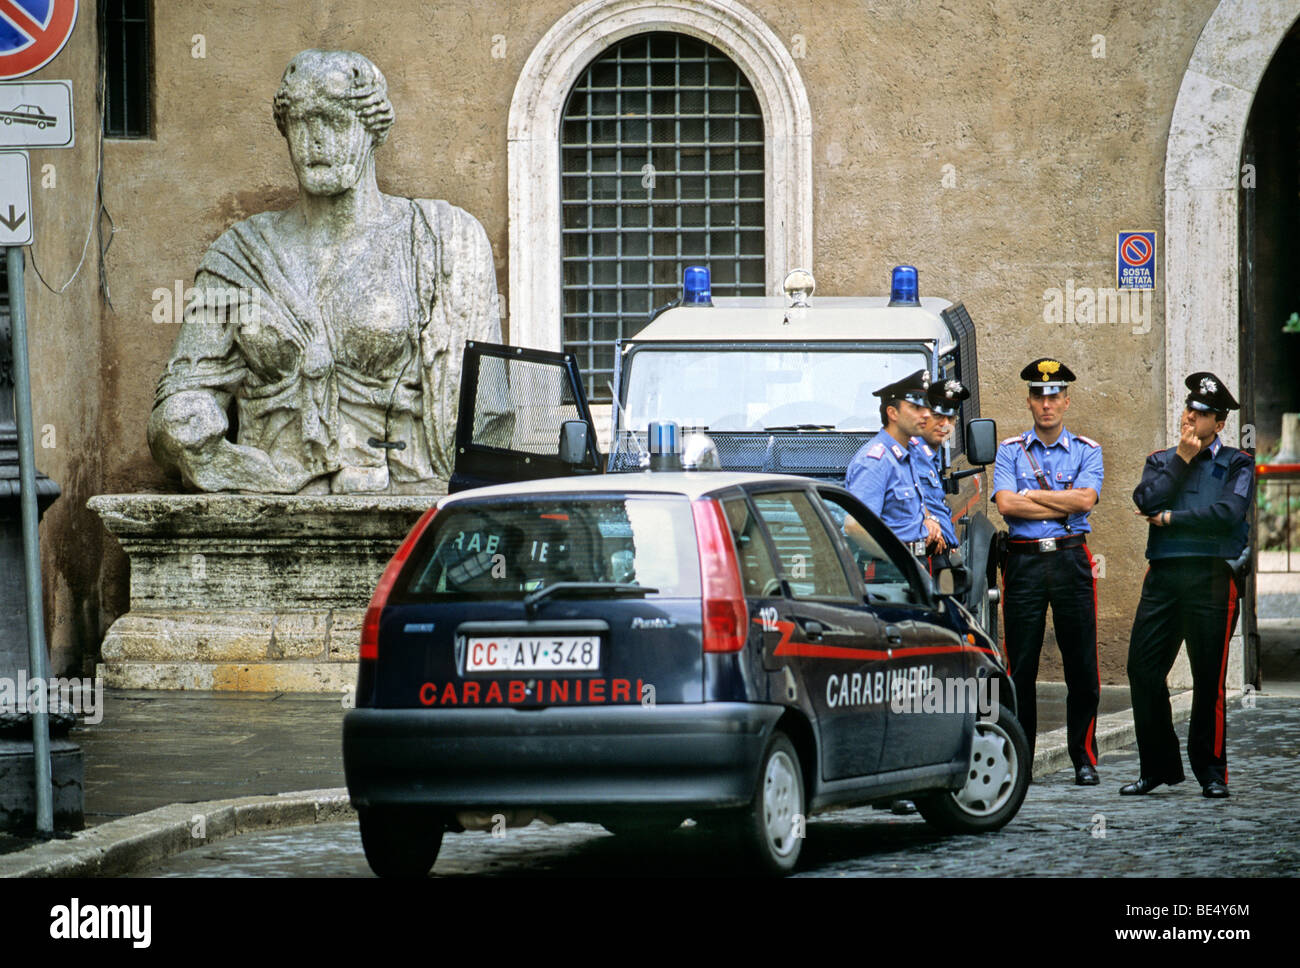 Estatua monumental del antiguo Imperio Romano, los Carabinieri, Palazzo di San Marco, Piazza Venezia, Roma, Lazio, Italia, Europa Foto de stock